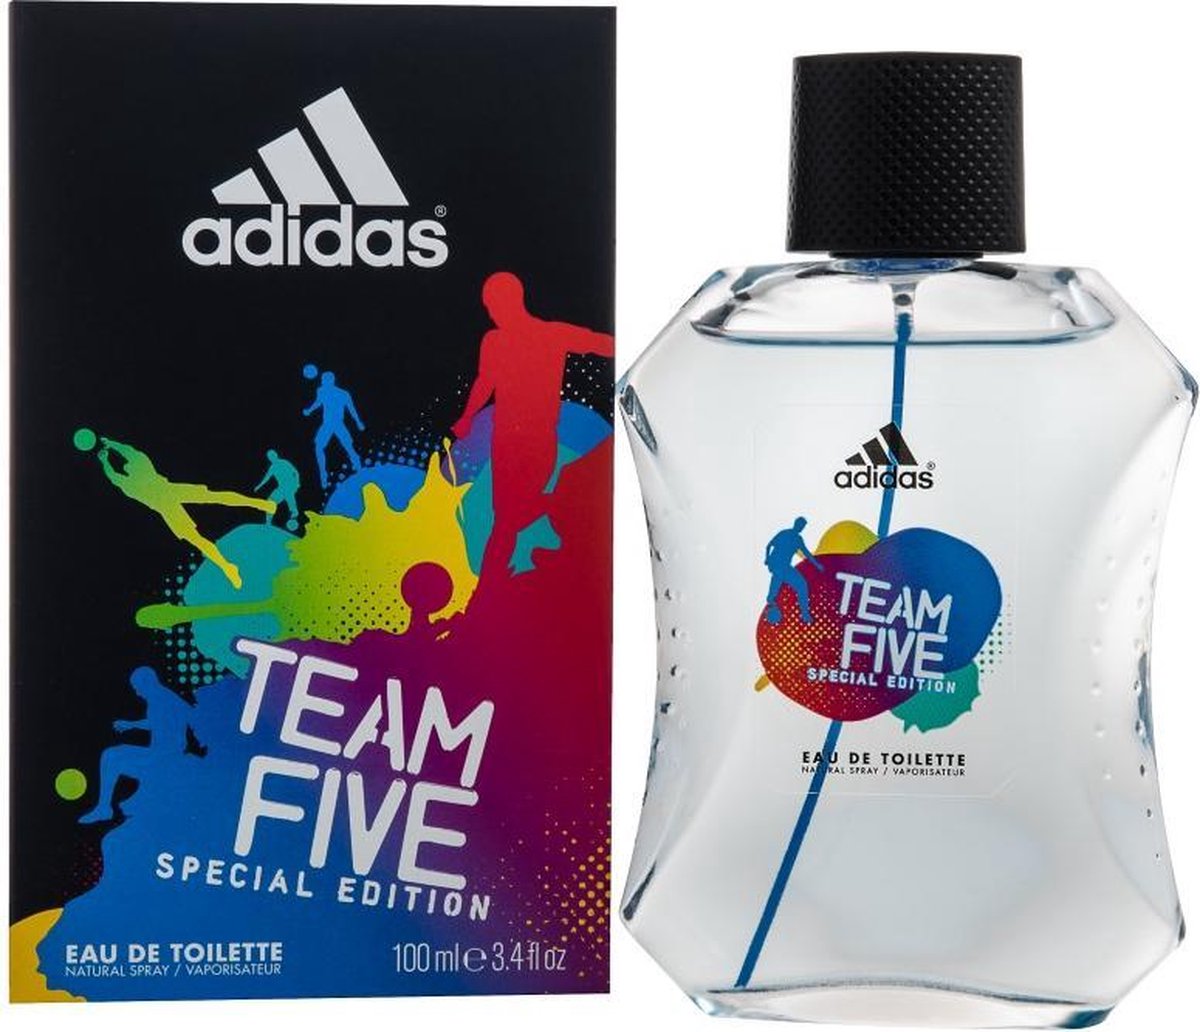 Adidas Team Five - Eau de toilette |